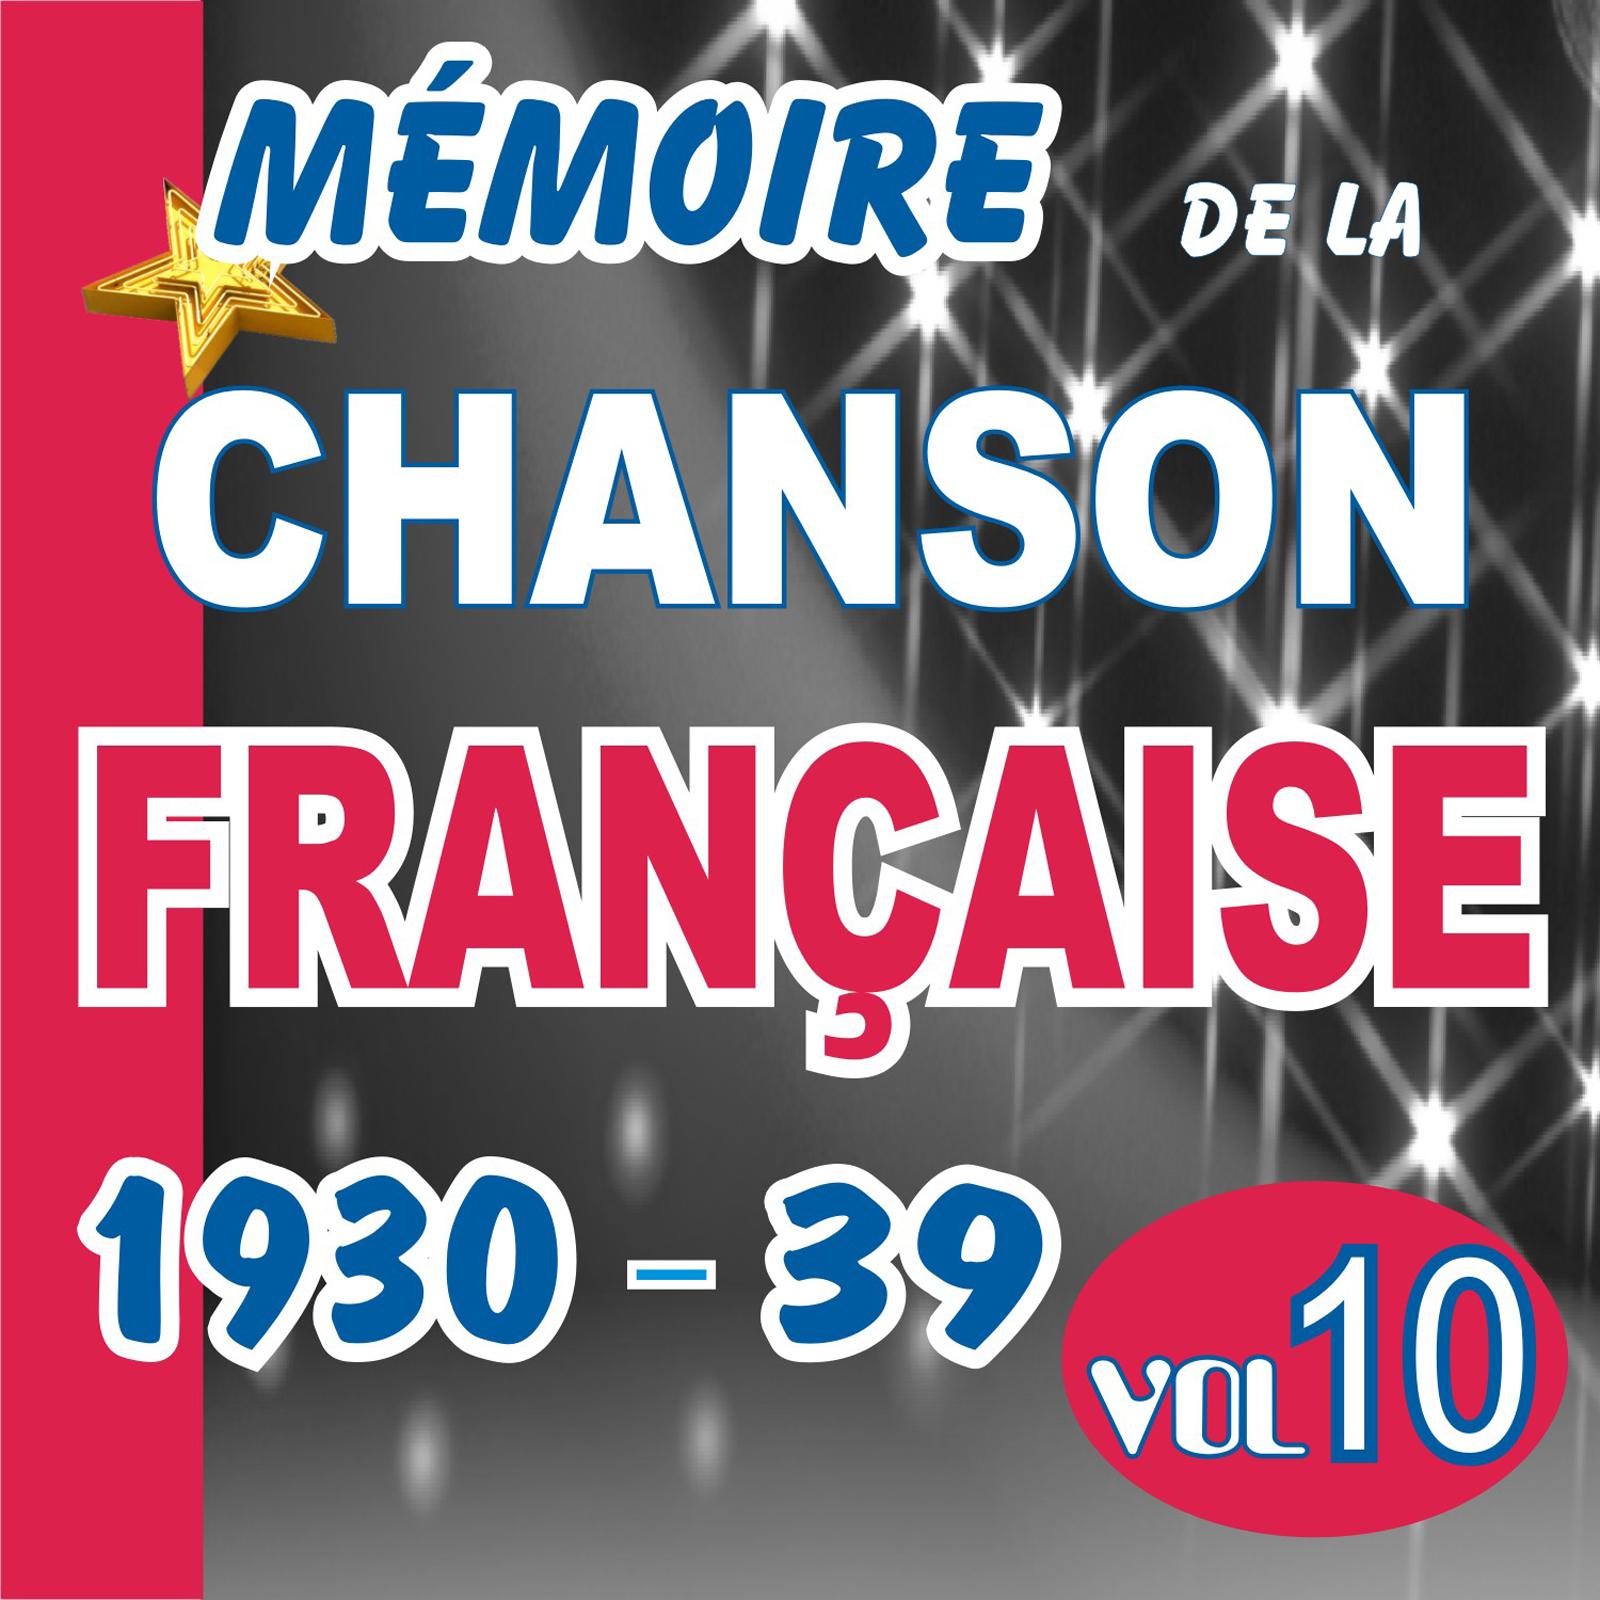 MEMOIRE DE LA CHANSON FRANCAISE DE 1930 A 1939 - VOL 1